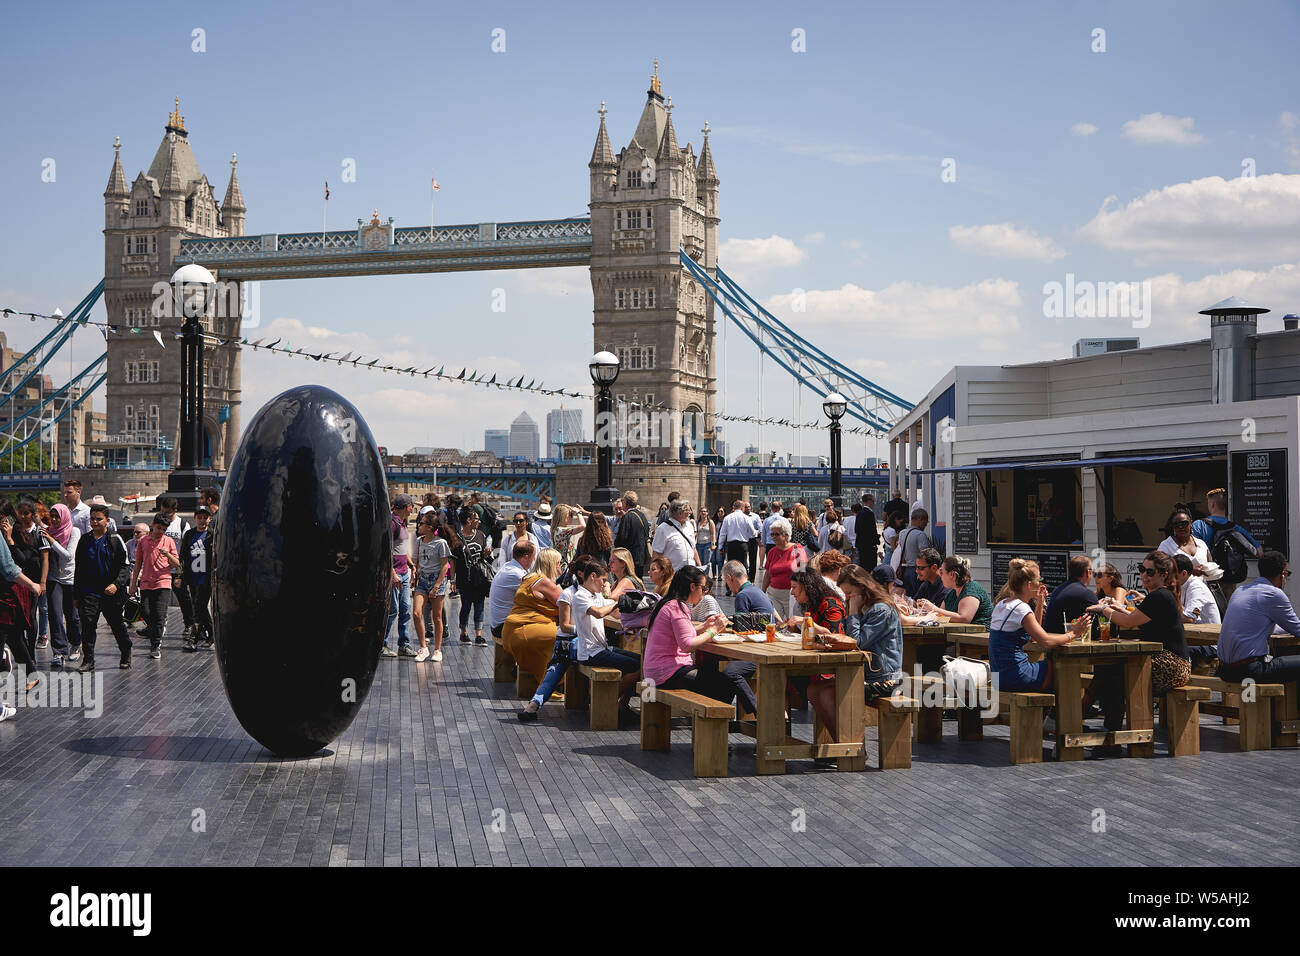 Londres, UK - juillet 2019. Les personnes ayant des boissons dans une fenêtre pop-up bar créé pour l'été par la rivière qui a eu lieu près de l'Hôtel de Ville et le Tower Bridge. Banque D'Images